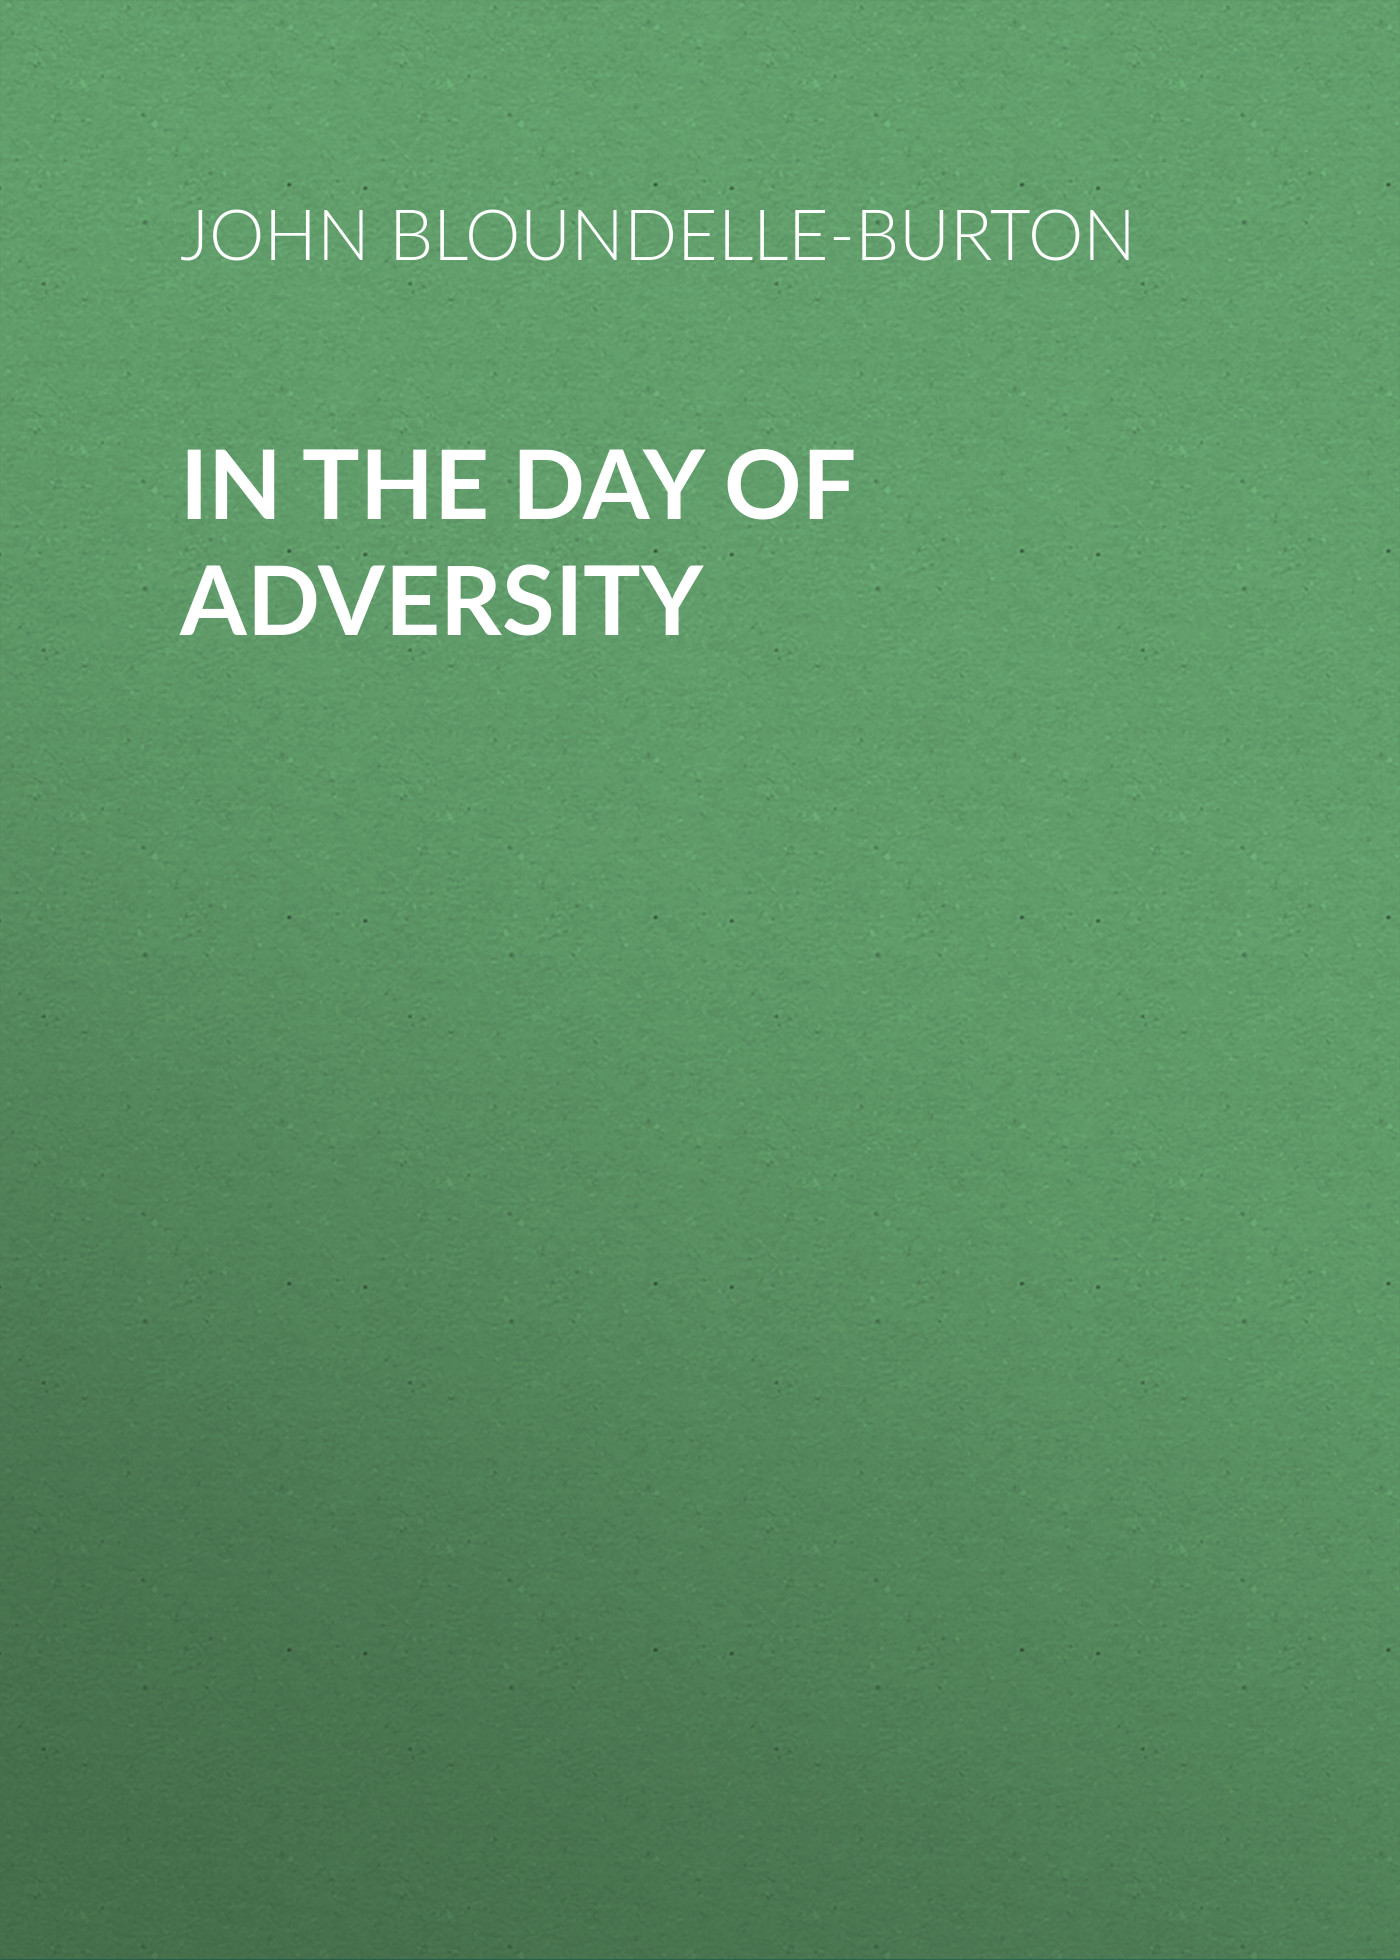 Книга In the Day of Adversity из серии , созданная John Bloundelle-Burton, может относится к жанру Зарубежная старинная литература, Зарубежная классика. Стоимость электронной книги In the Day of Adversity с идентификатором 24178924 составляет 0.90 руб.